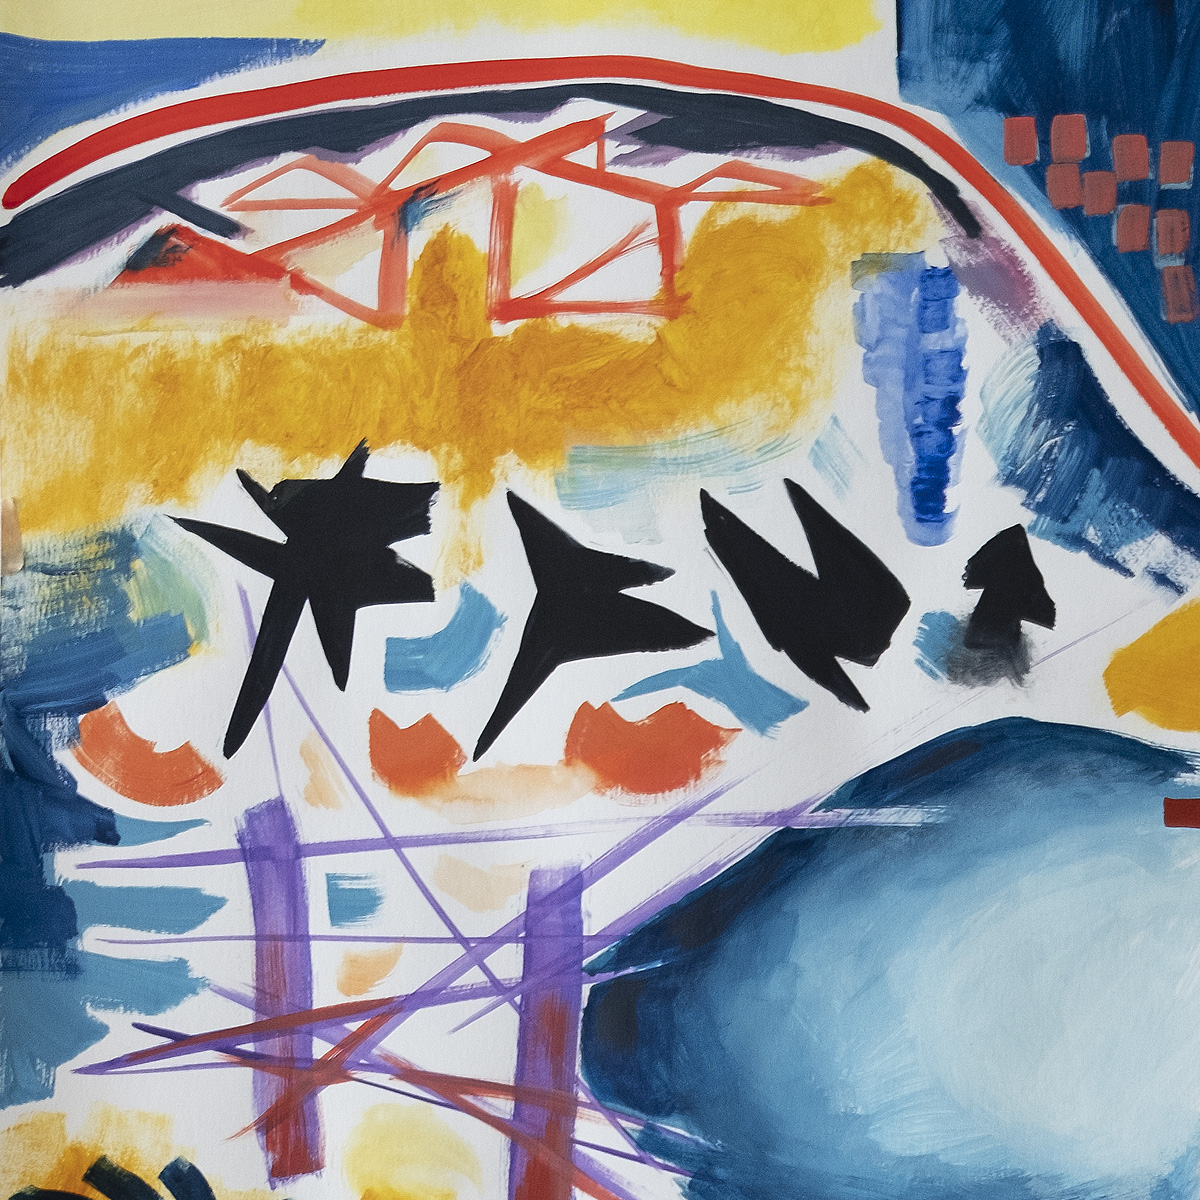 M. Cieśla: "Abstraktion inspiriert von den Tieflandalpen", Original, Zeitgenössische Aquarellmalerei